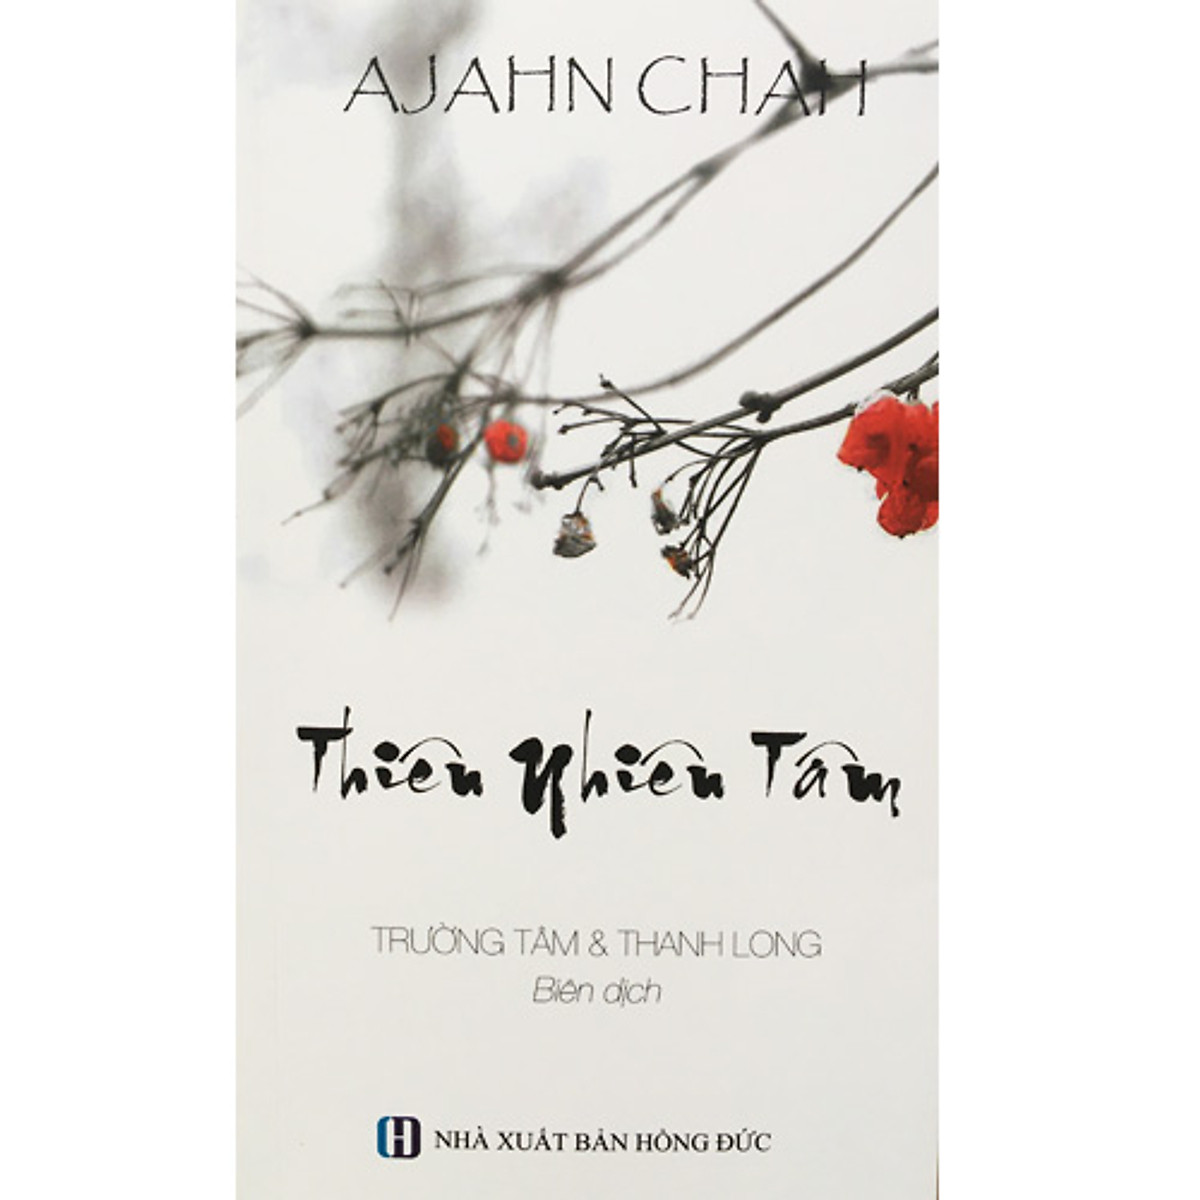 Bộ 3 Cuốn Sách Của Thiền Sư Ajahn Chah : Phật Tại Tâm + Thân Và Tâm + Thiên Nhiên Tâm ( Tái Bản )